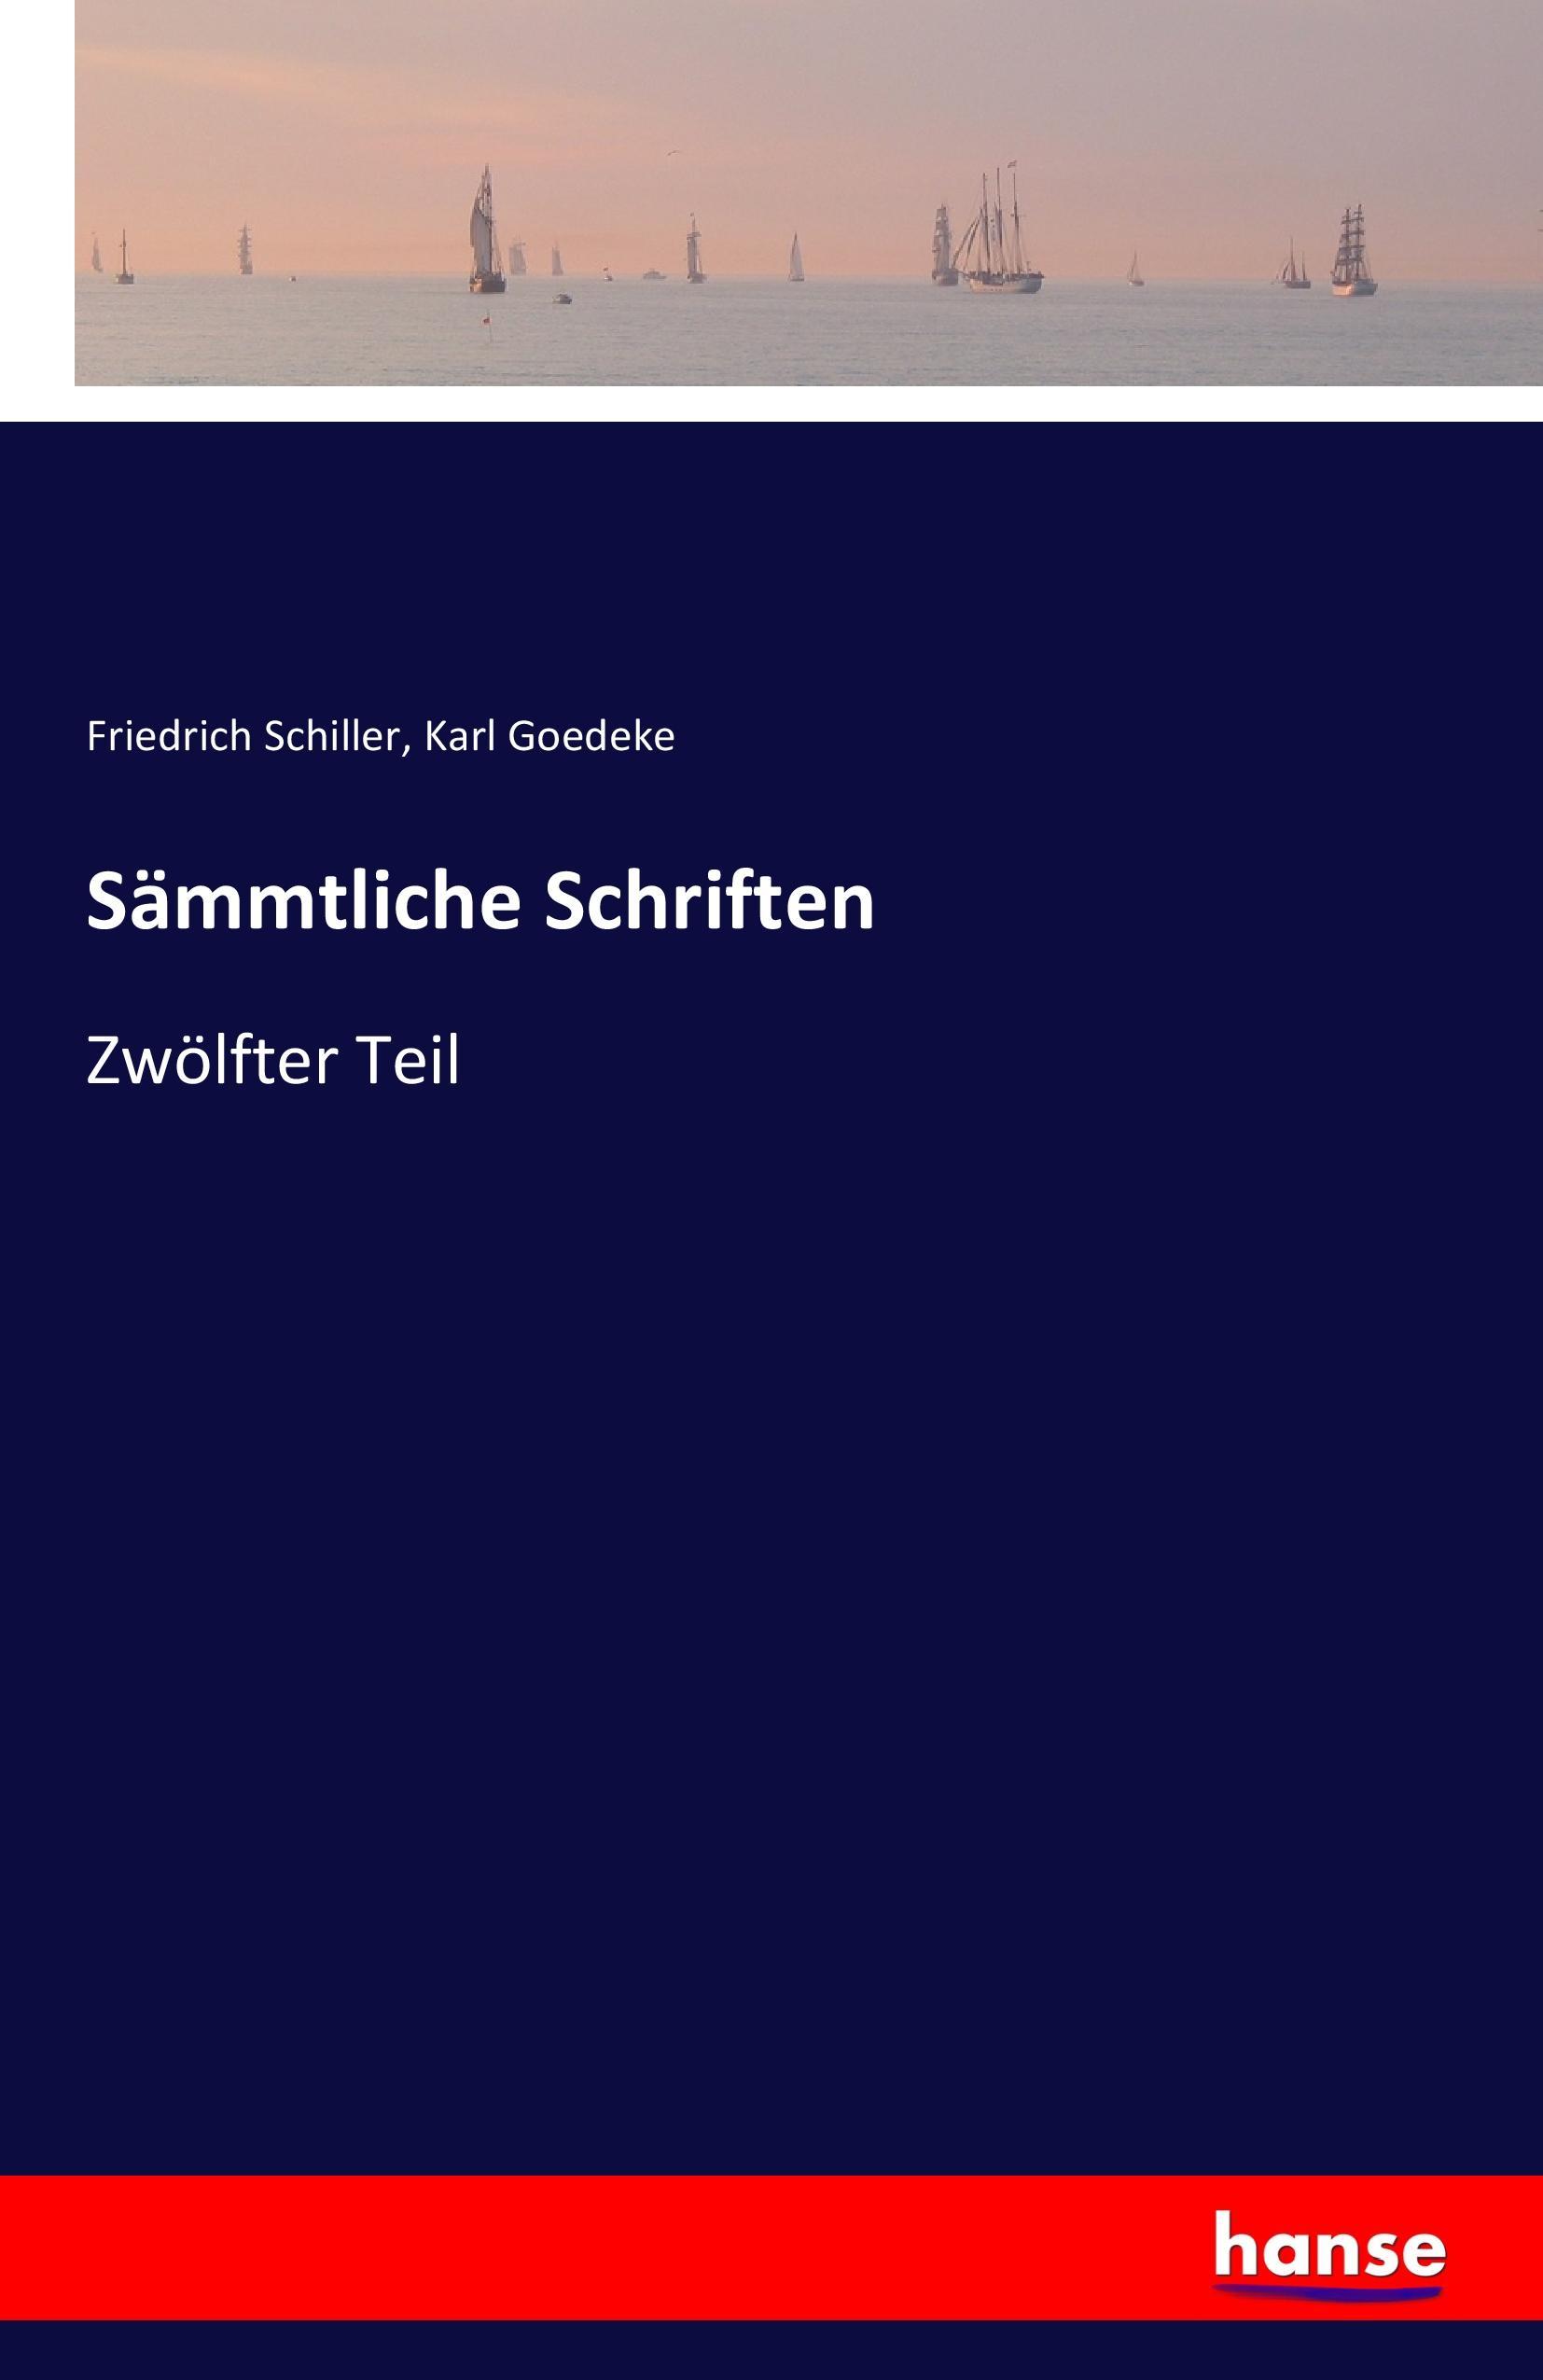 Sämmtliche Schriften | Zwölfter Teil | Friedrich Schiller (u. a.) | Taschenbuch | Paperback | 592 S. | Deutsch | 2016 | hansebooks | EAN 9783741133435 - Schiller, Friedrich